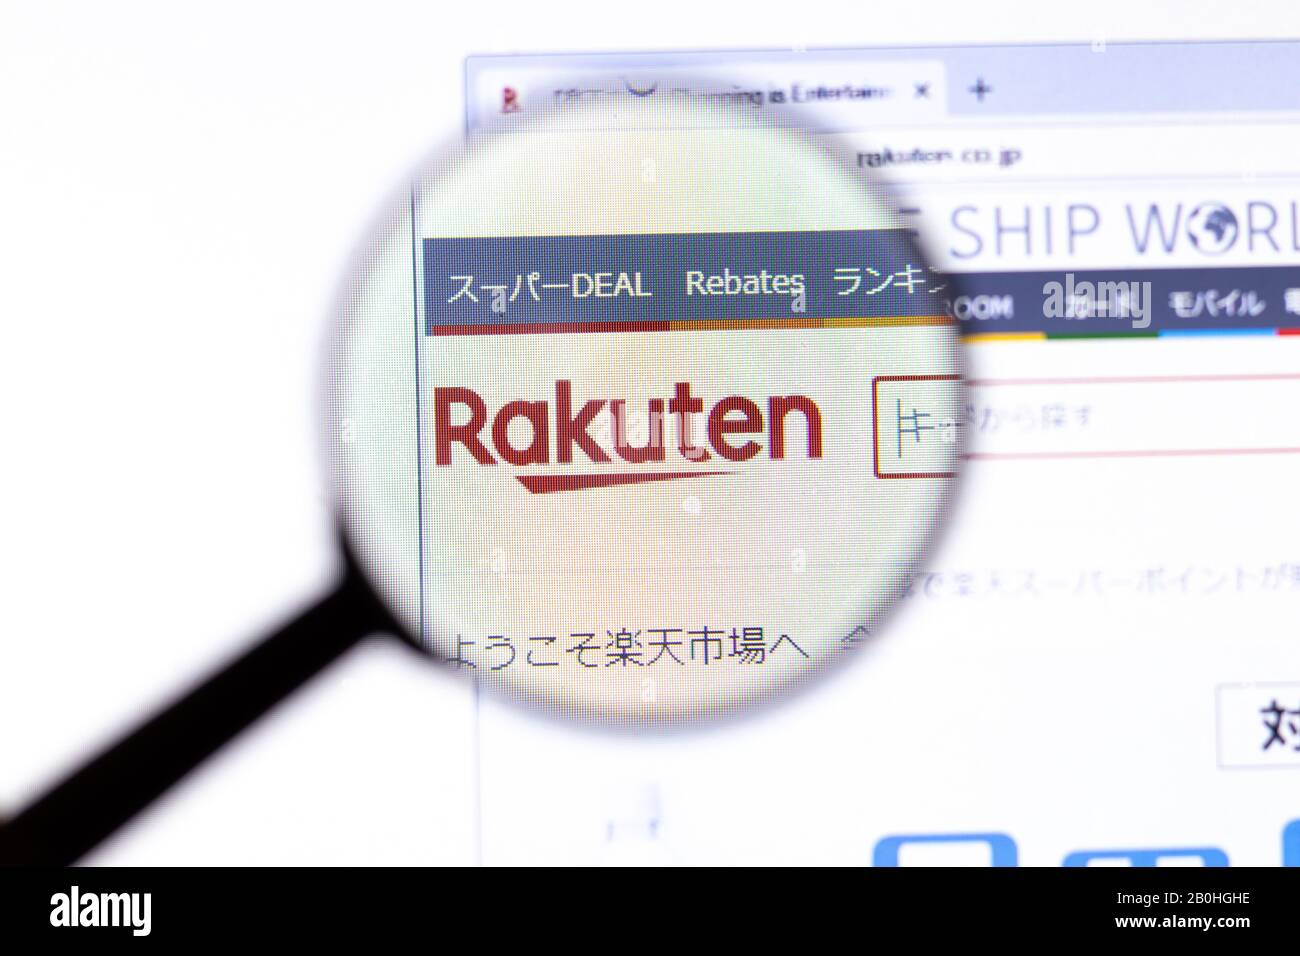 Los Angeles, California, Stati Uniti - 18.02.2020: Pagina del sito web di Rakuten con il logo di primo piano. Icona del sito Rakuten.co.jp sullo schermo, editoriale Illustrativo Foto Stock